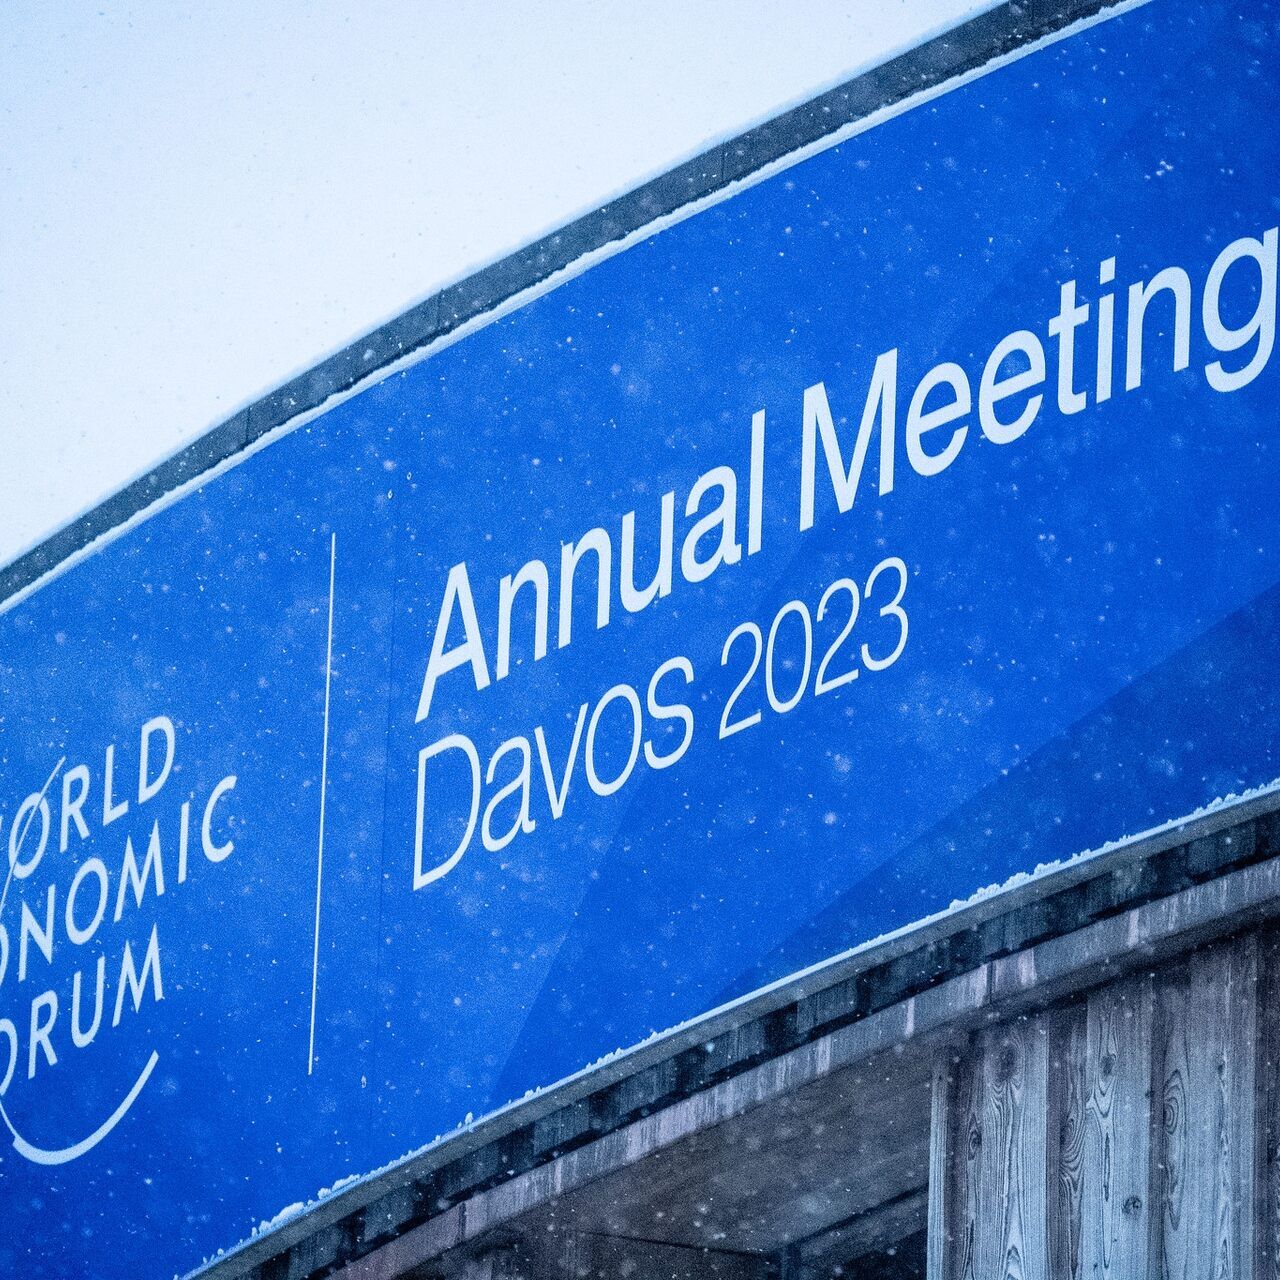 WEF 2023: mil nou-cents líders econòmics, governamentals i de l'administració pública mundials han optat per participar al Fòrum Econòmic Mundial 2023 a Davos